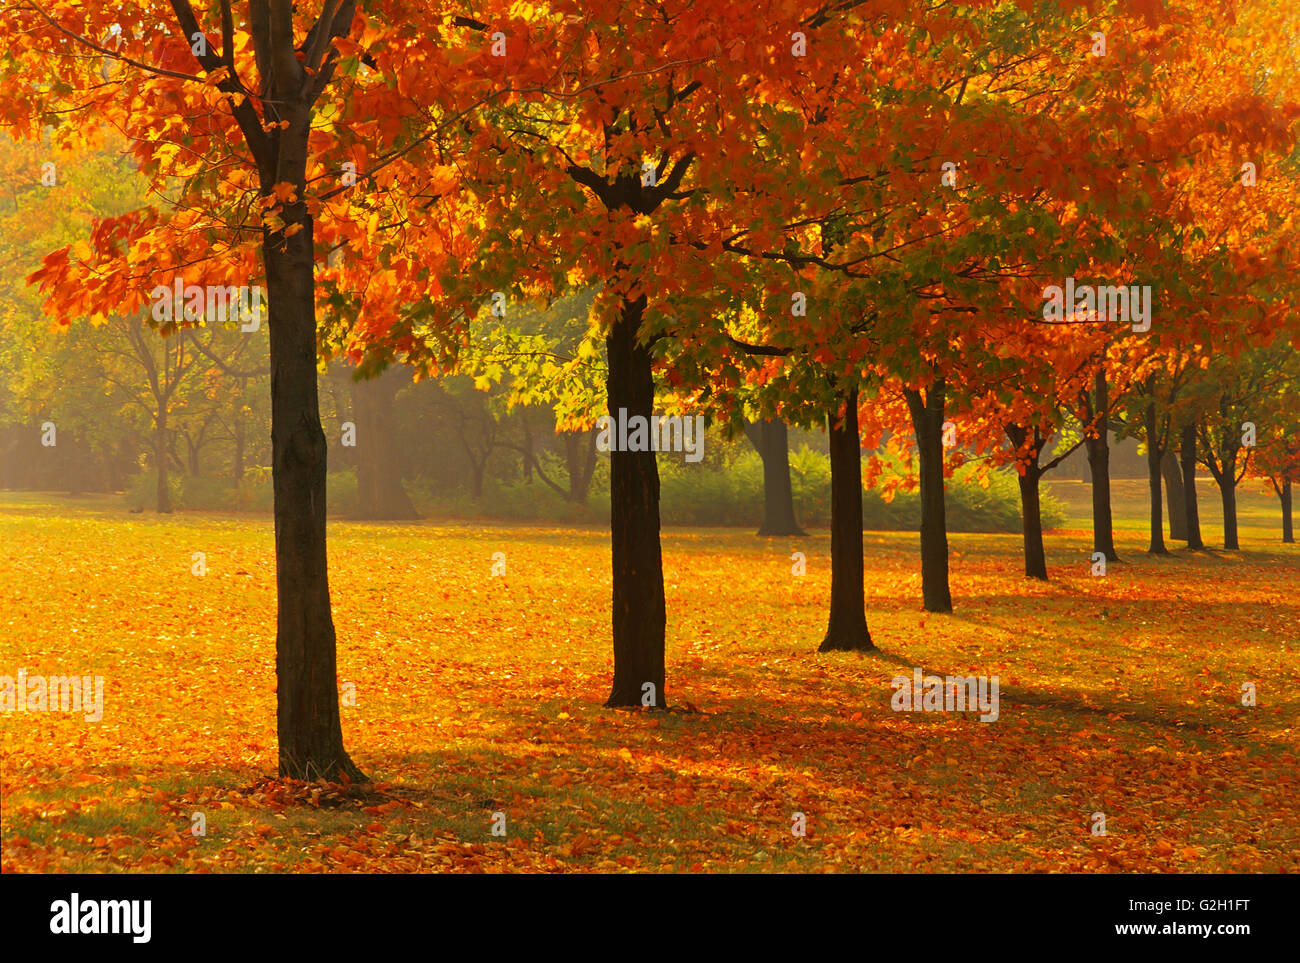 Zucker-Ahornbäume im Herbst Farbe Guelph, Ontario Kanada Stockfoto